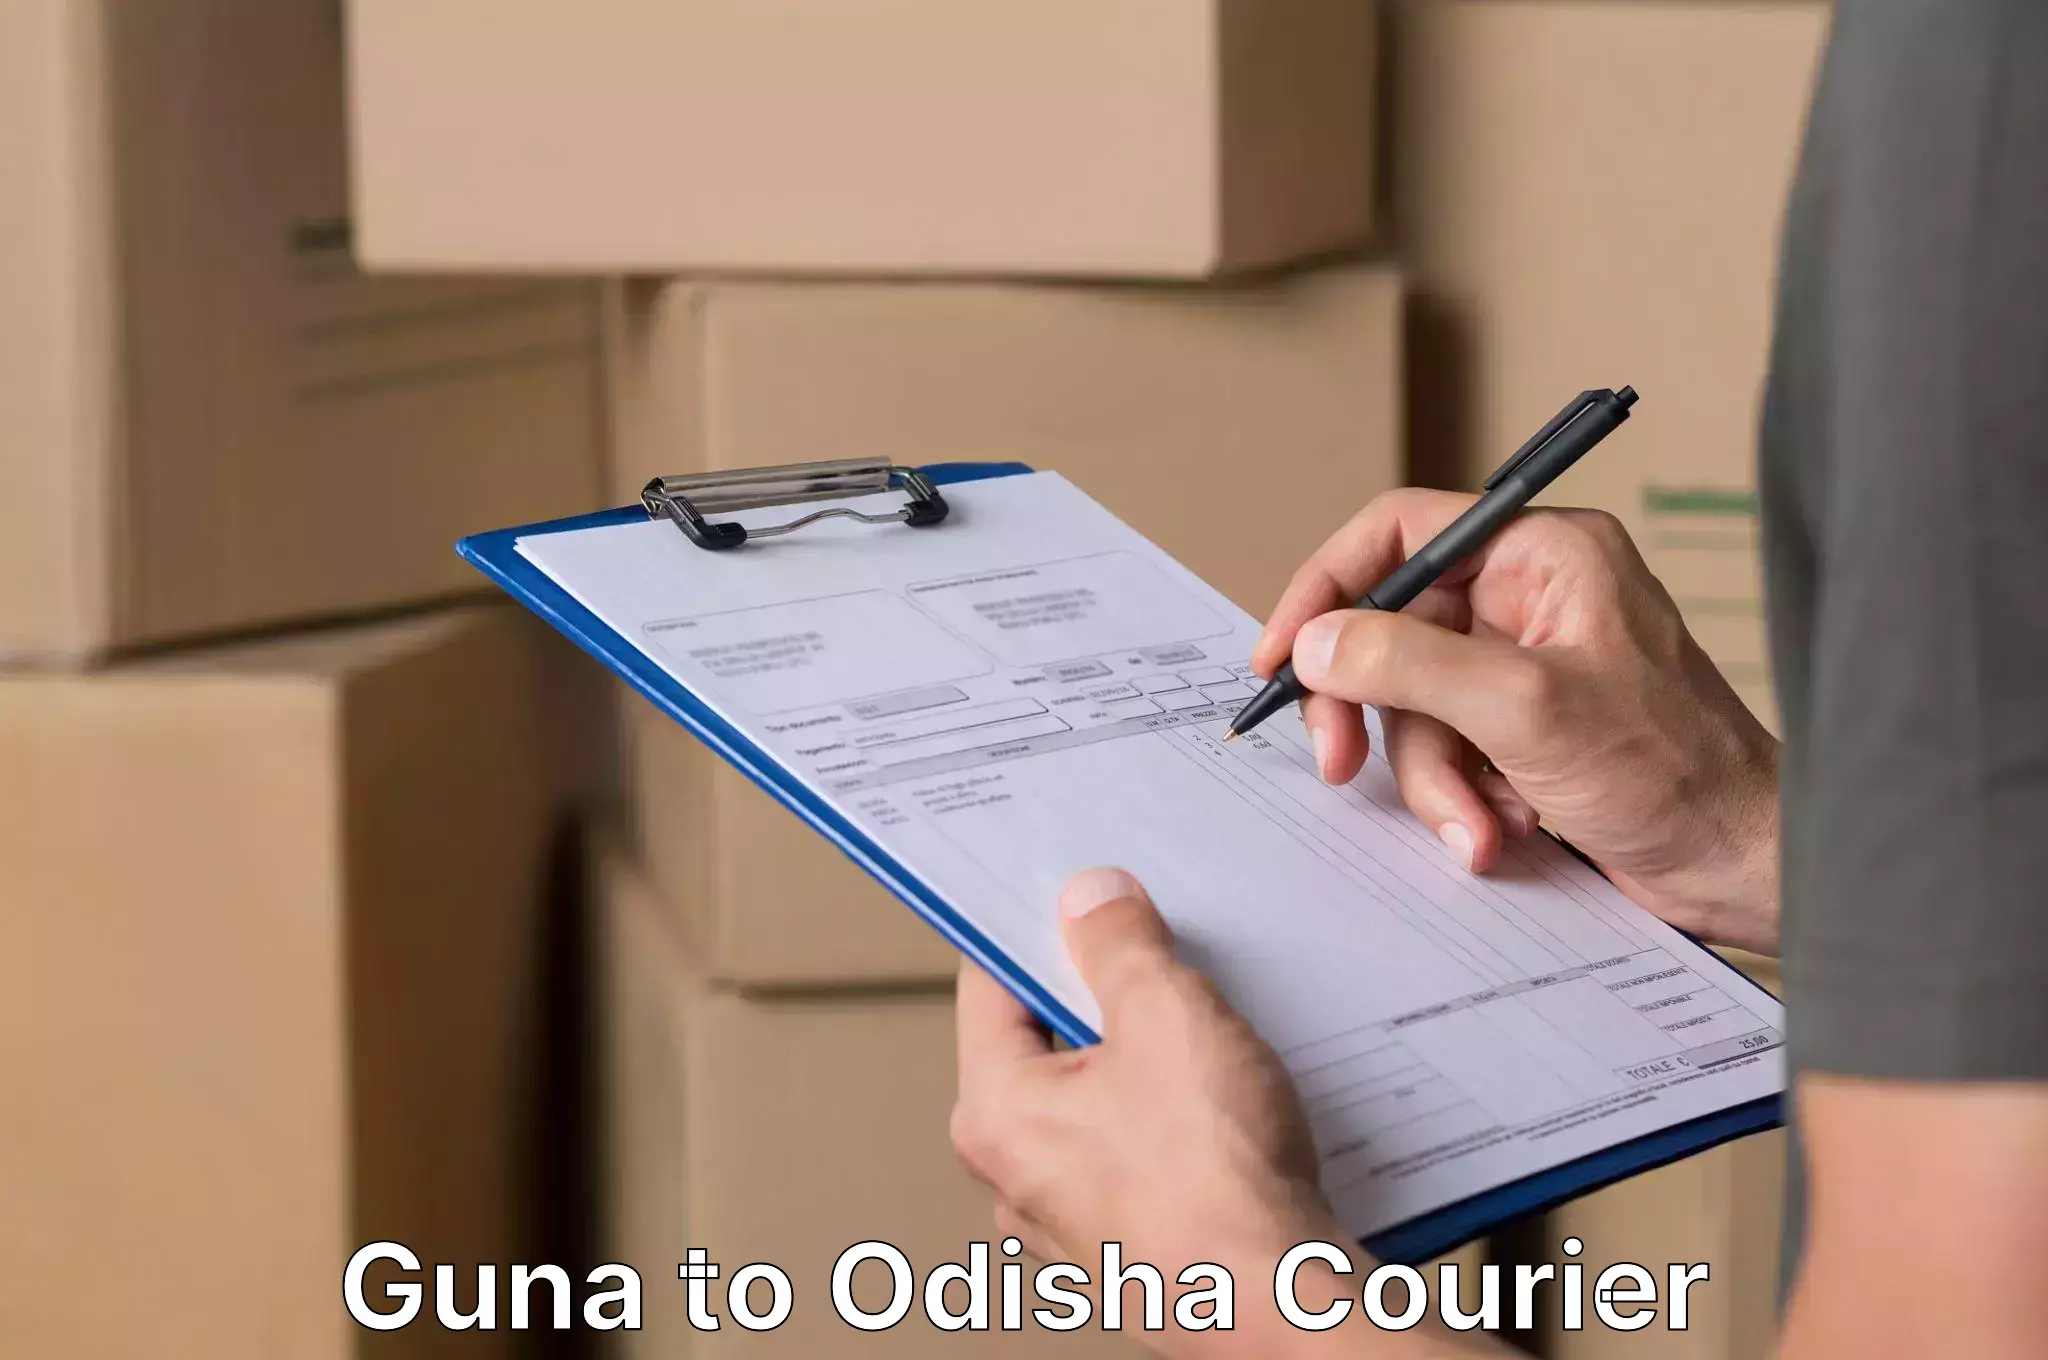 Furniture moving experts Guna to Odisha